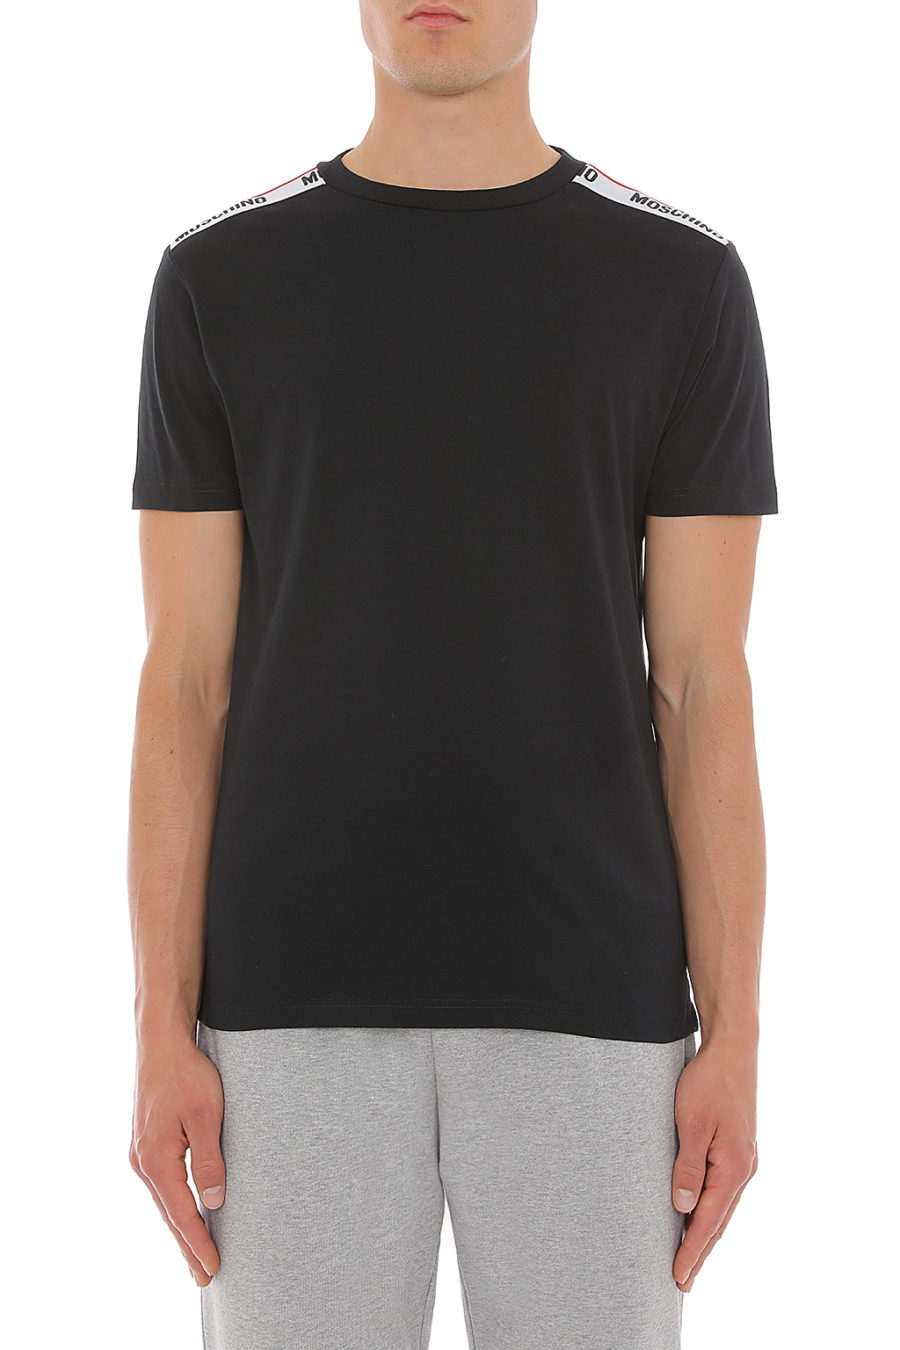 Camiseta negra con logo en cinta en hombros - 1916 8101 0555